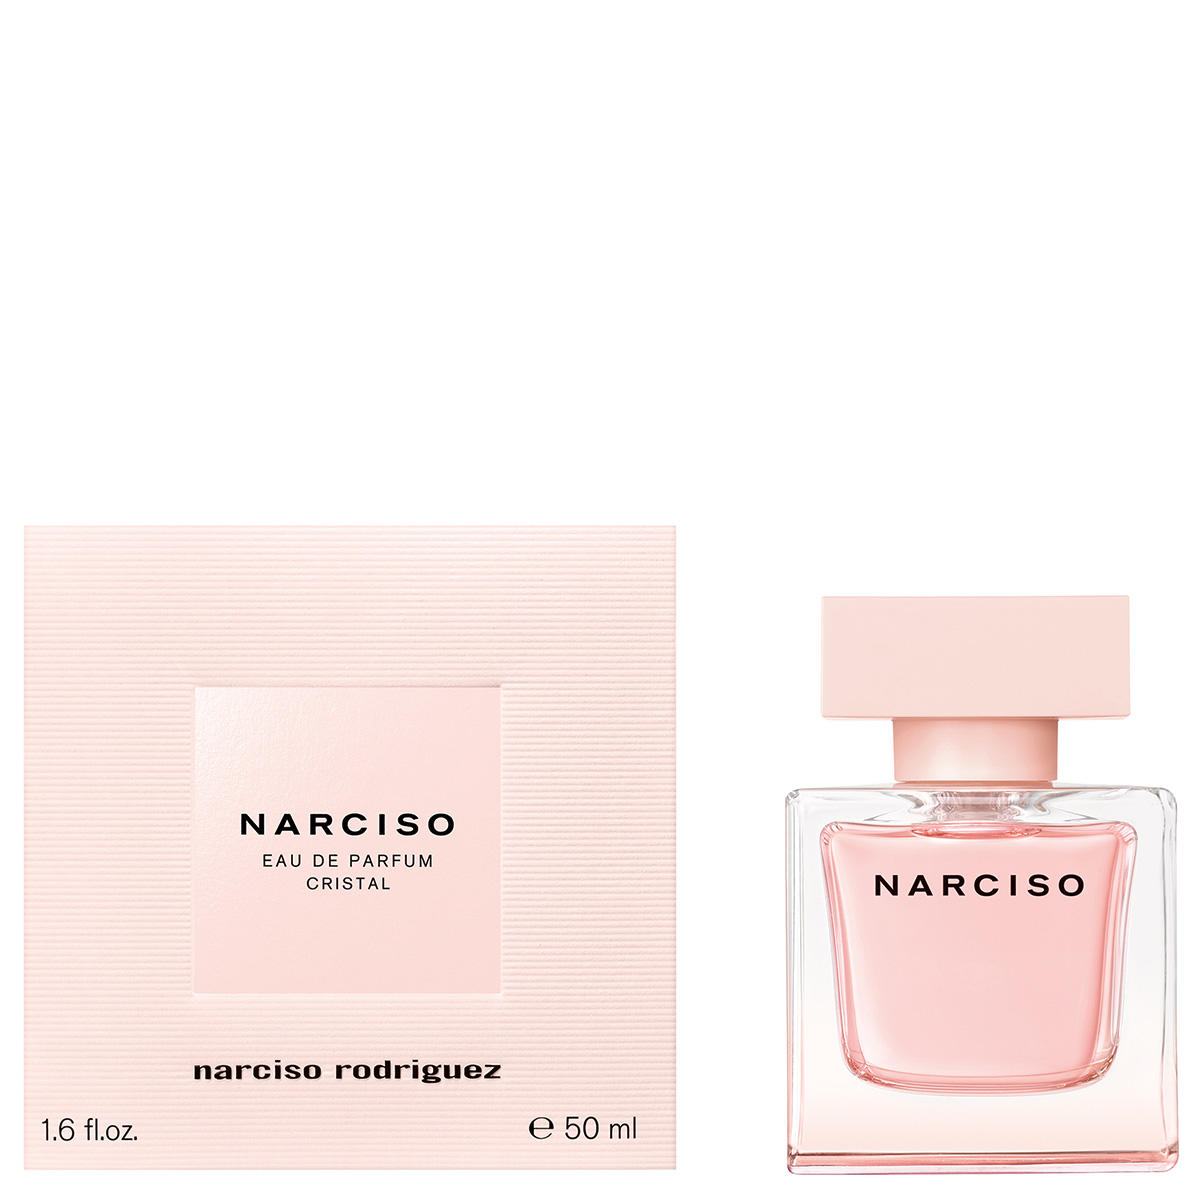 Narciso Rodriguez NARCISO CRISTAL Eau de Parfum 50 ml - 2